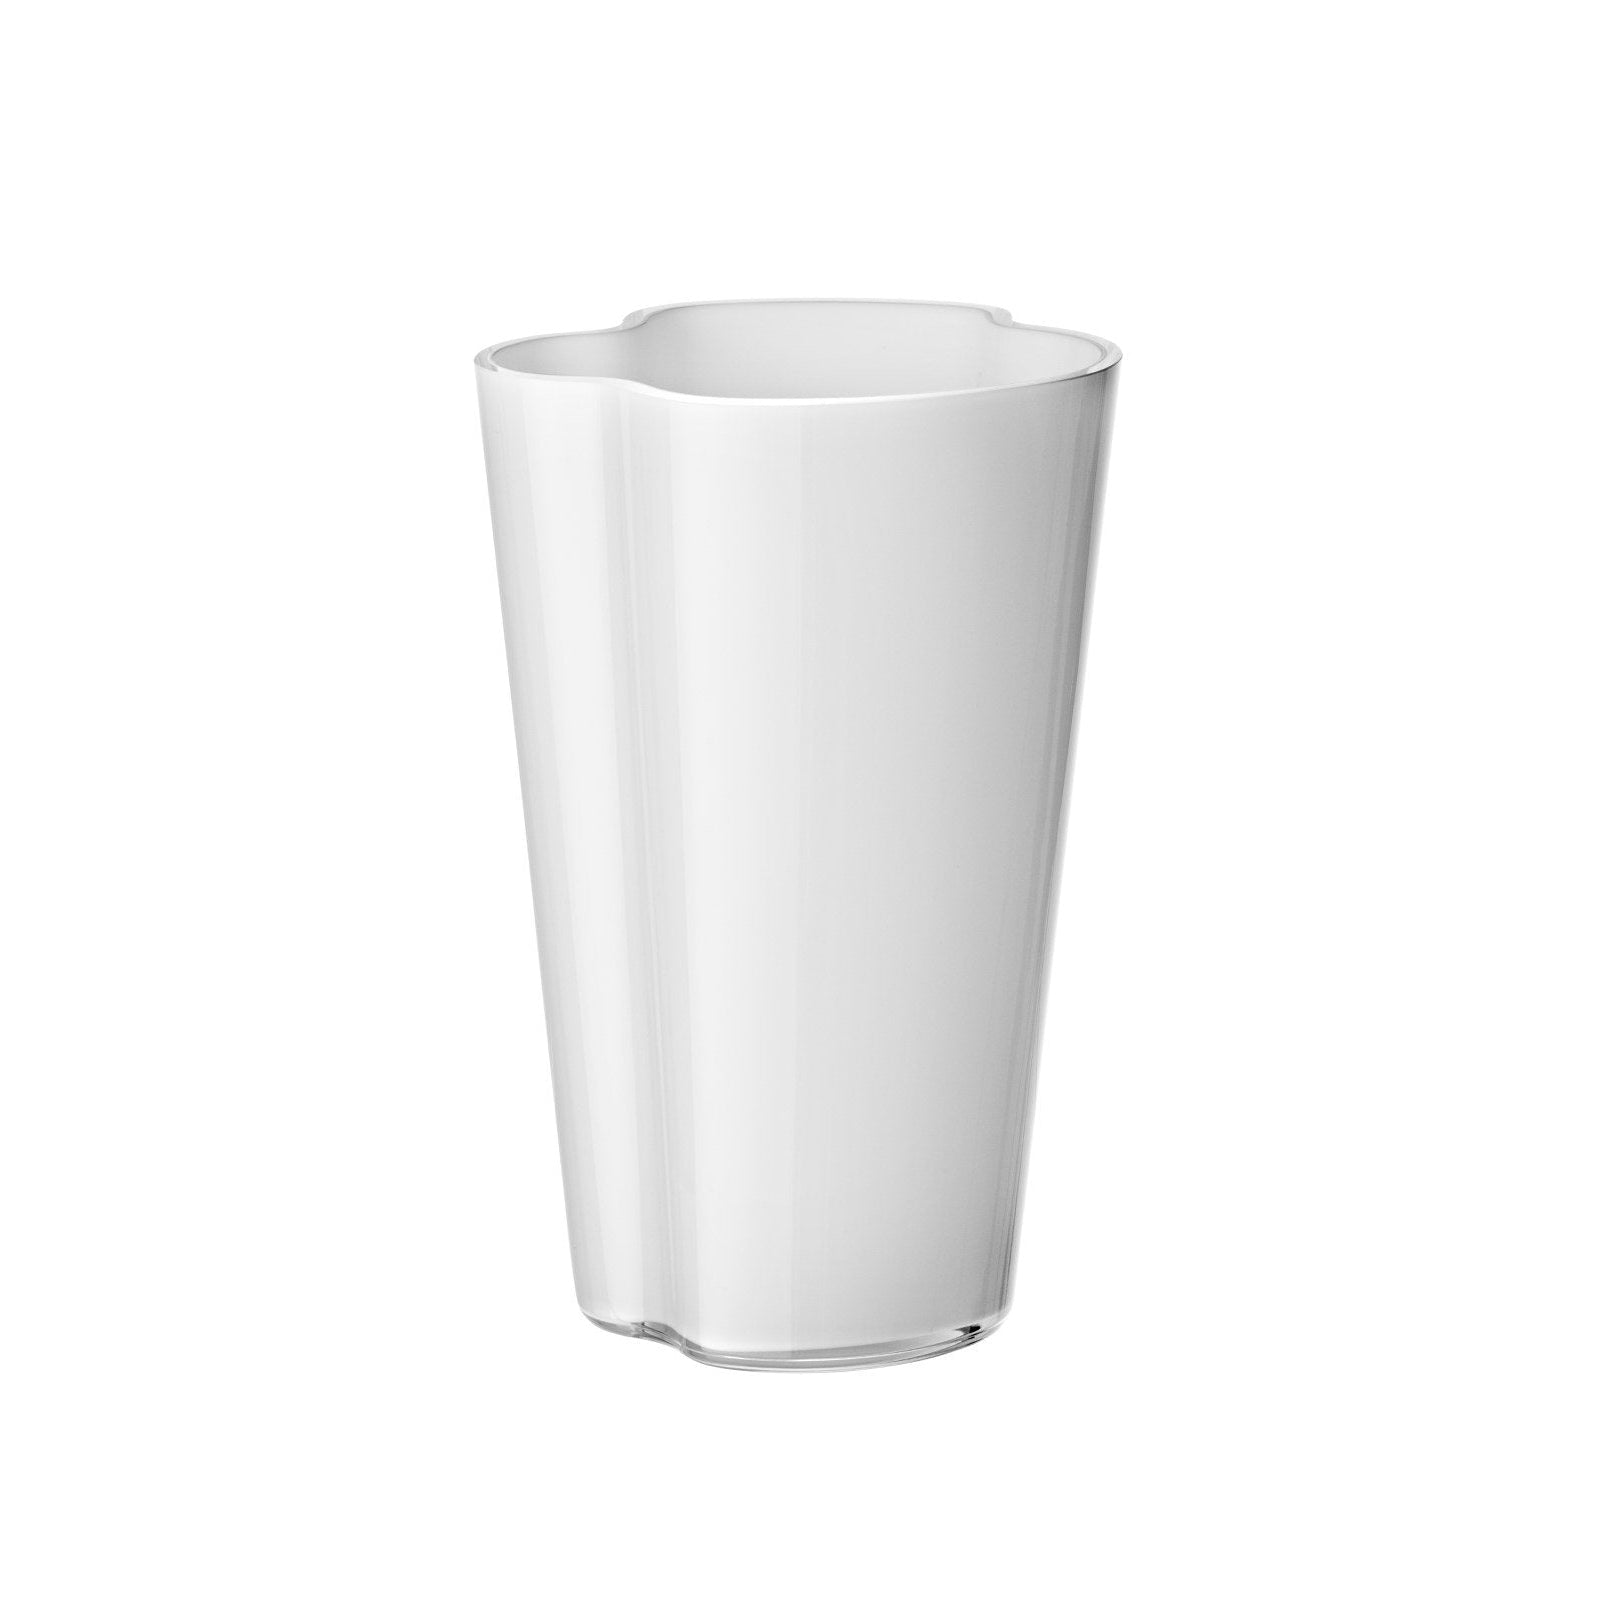 Iittala alvar aalto vaso branco, 22 cm